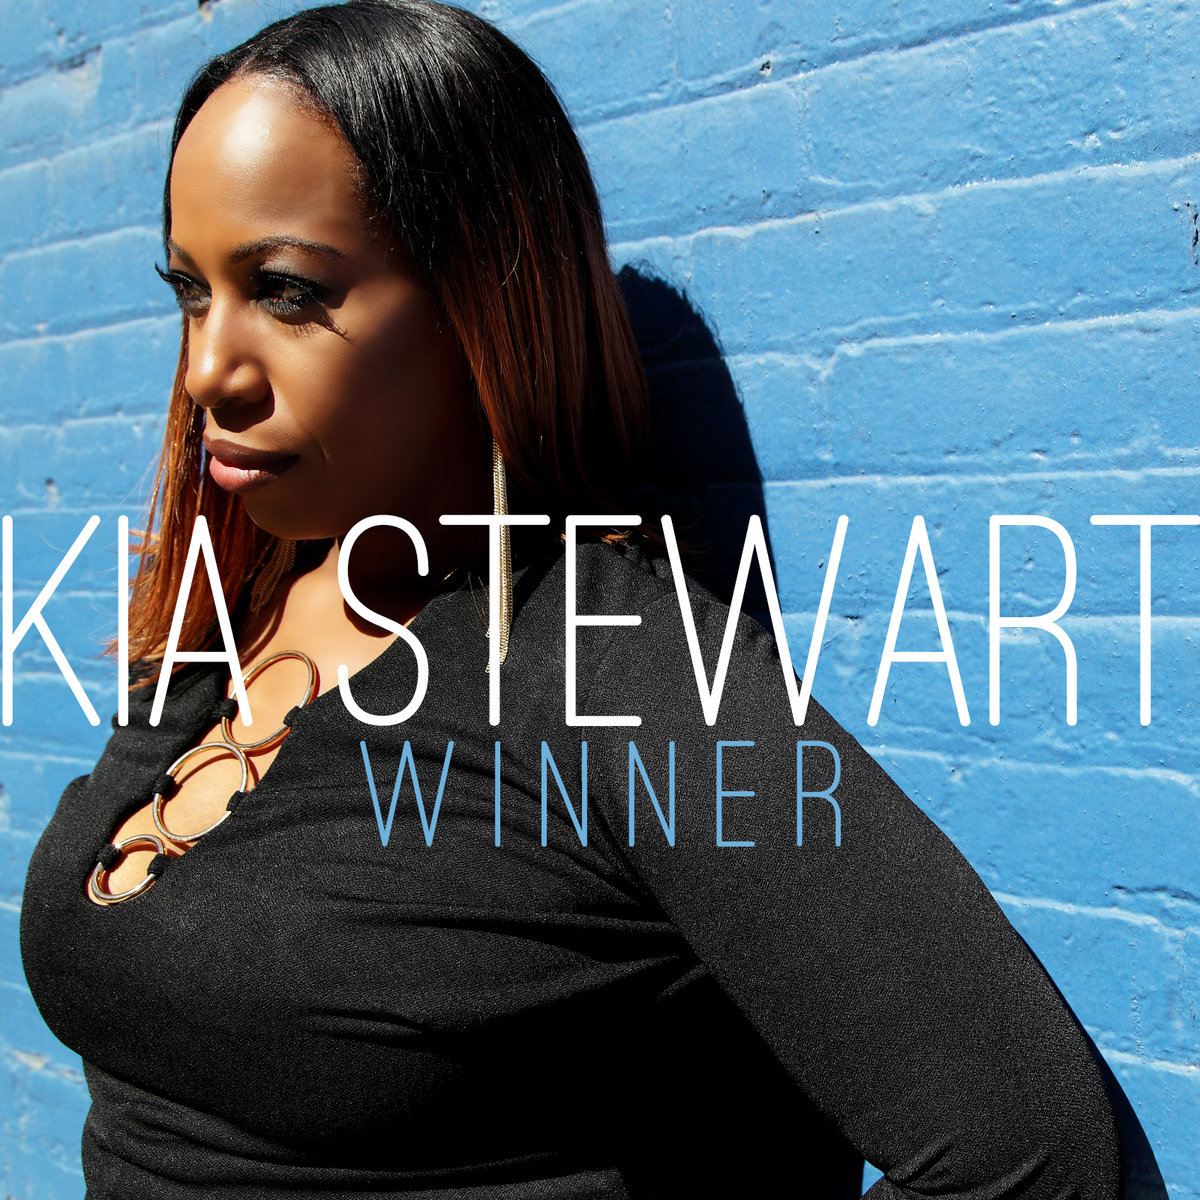 Kia Stewart - Winner / HCM0124